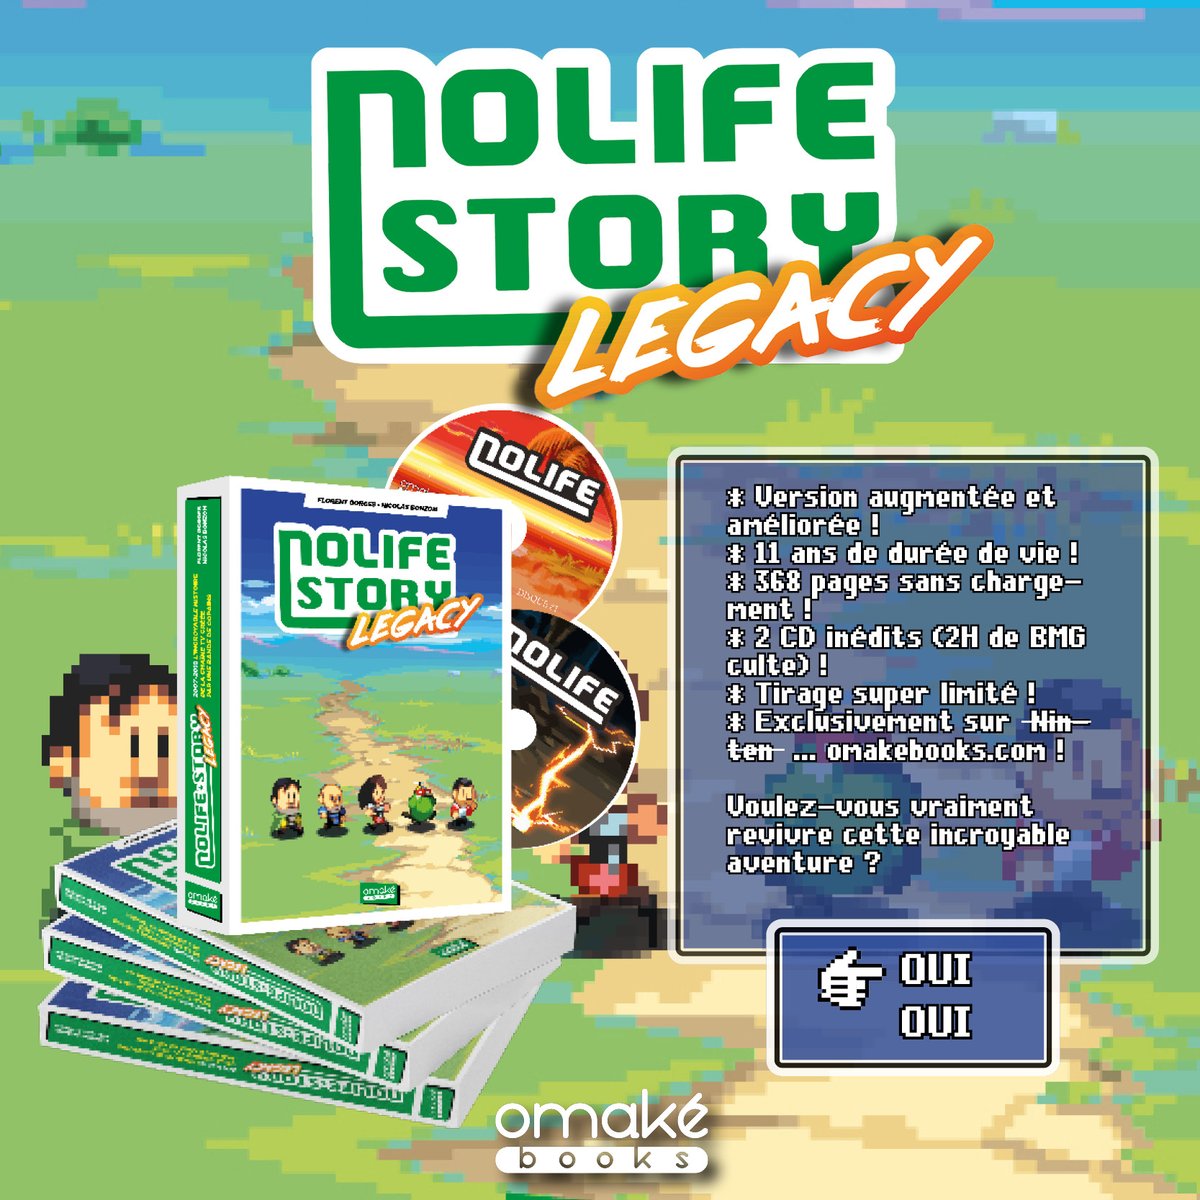 [ANNONCE] 'Nolife Story Legacy' ⭐️ Réédition du 'Nolife Story' (de 2012) 𝗮𝘂𝗴𝗺𝗲𝗻𝘁𝗲́𝗲 couvrant la 𝘁𝗼𝘁𝗮𝗹𝗶𝘁𝗲́ de l'aventure #nolife (2007-2018) ⭐️ Dispo le 𝟮𝟭 𝗷𝘂𝗶𝗹𝗹𝗲𝘁 ⭐️ 𝗨𝗻𝗶𝗾𝘂𝗲𝗺𝗲𝗻𝘁 sur omakebooks.com ⭐️ Ouverture 𝗣𝗿𝗲́𝗰𝗼 le 6 juin 🔥